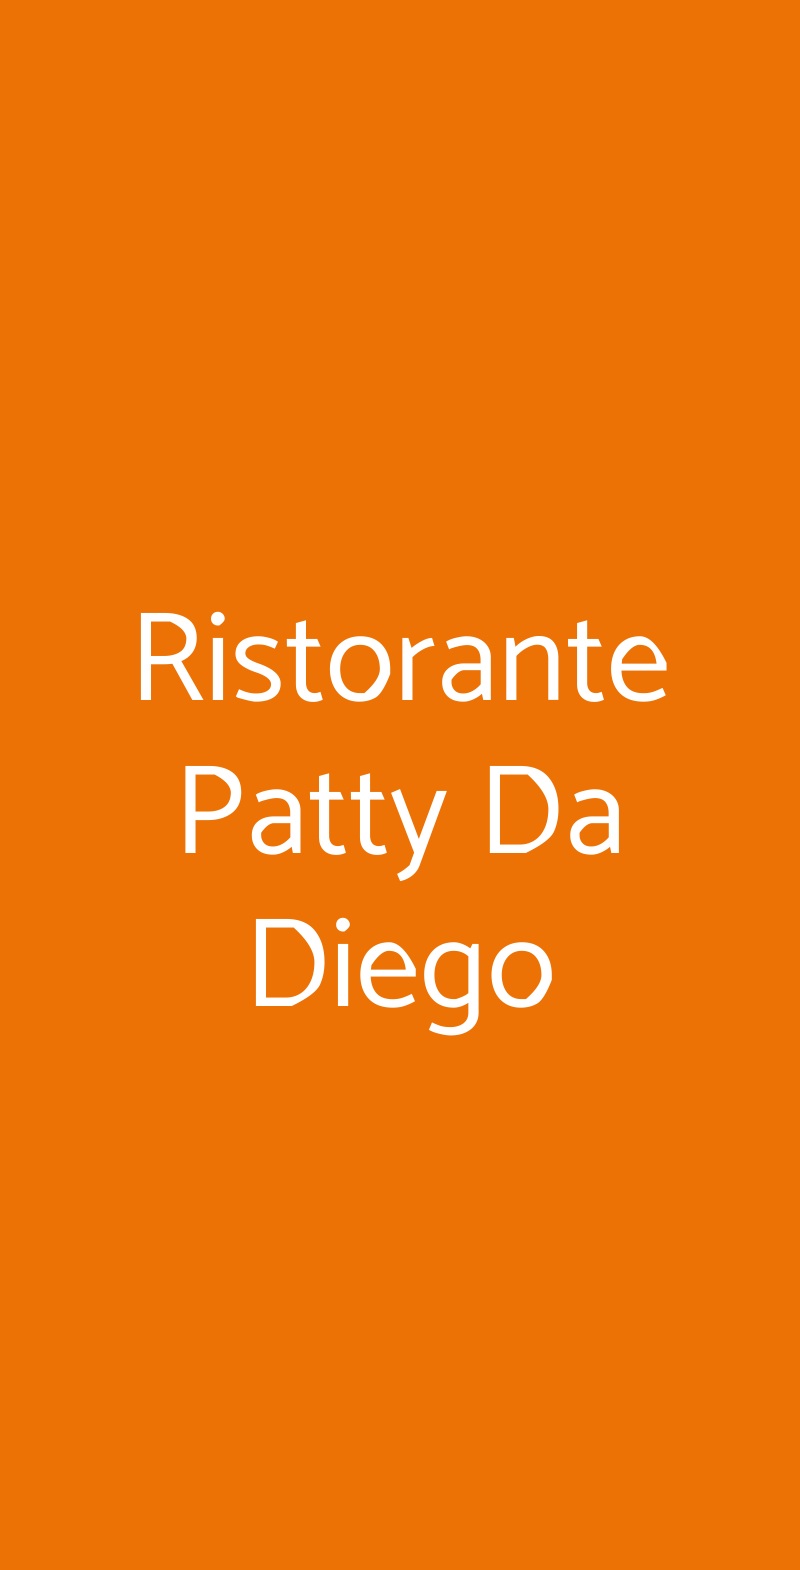 Ristorante Patty Da Diego Riccione menù 1 pagina